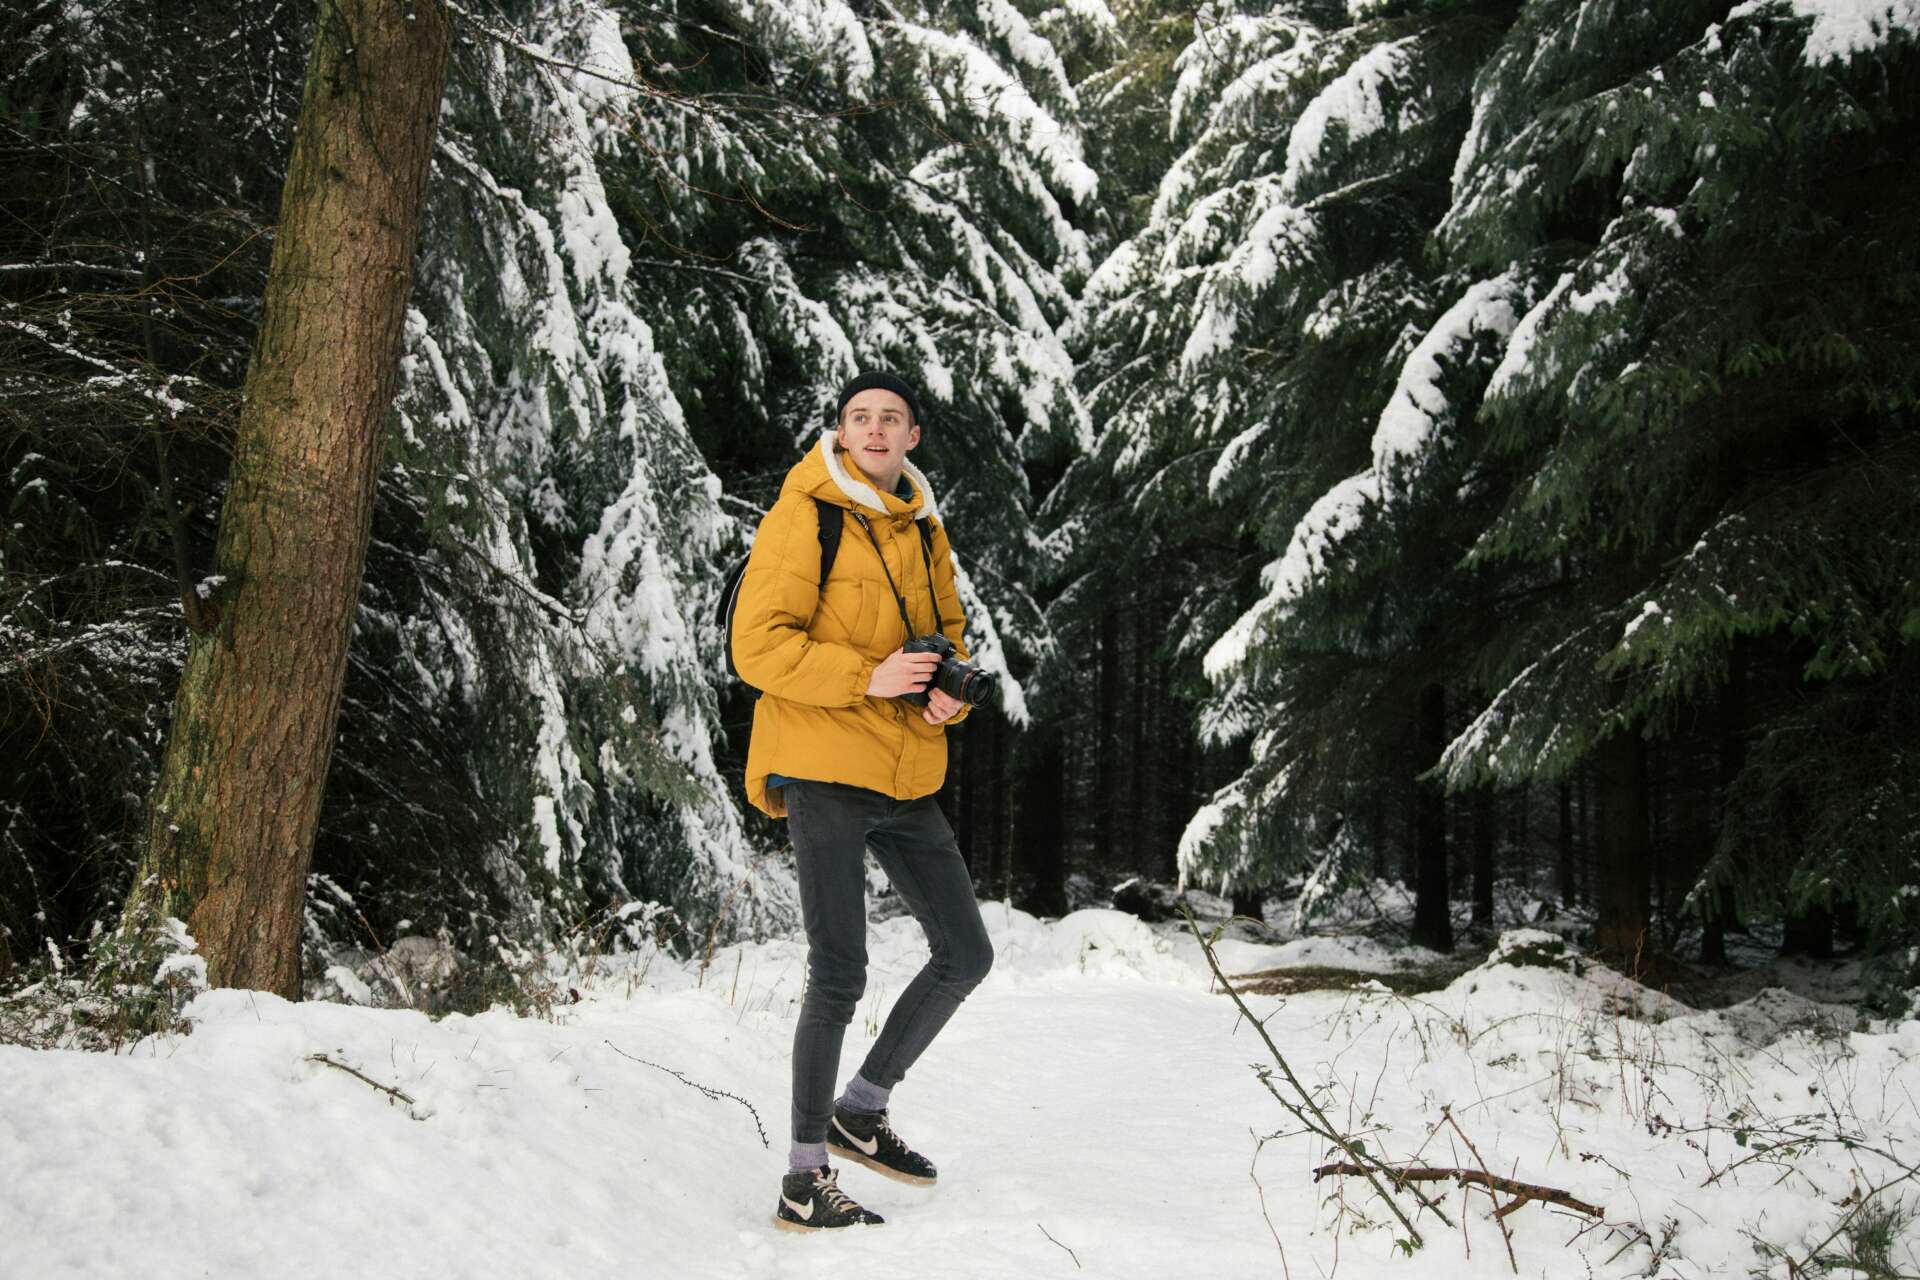 Keltaiseen takkiin pukeutunut nuori mies kävelee lumisten puiden välissä. Hänellä on mukanaan kamera.